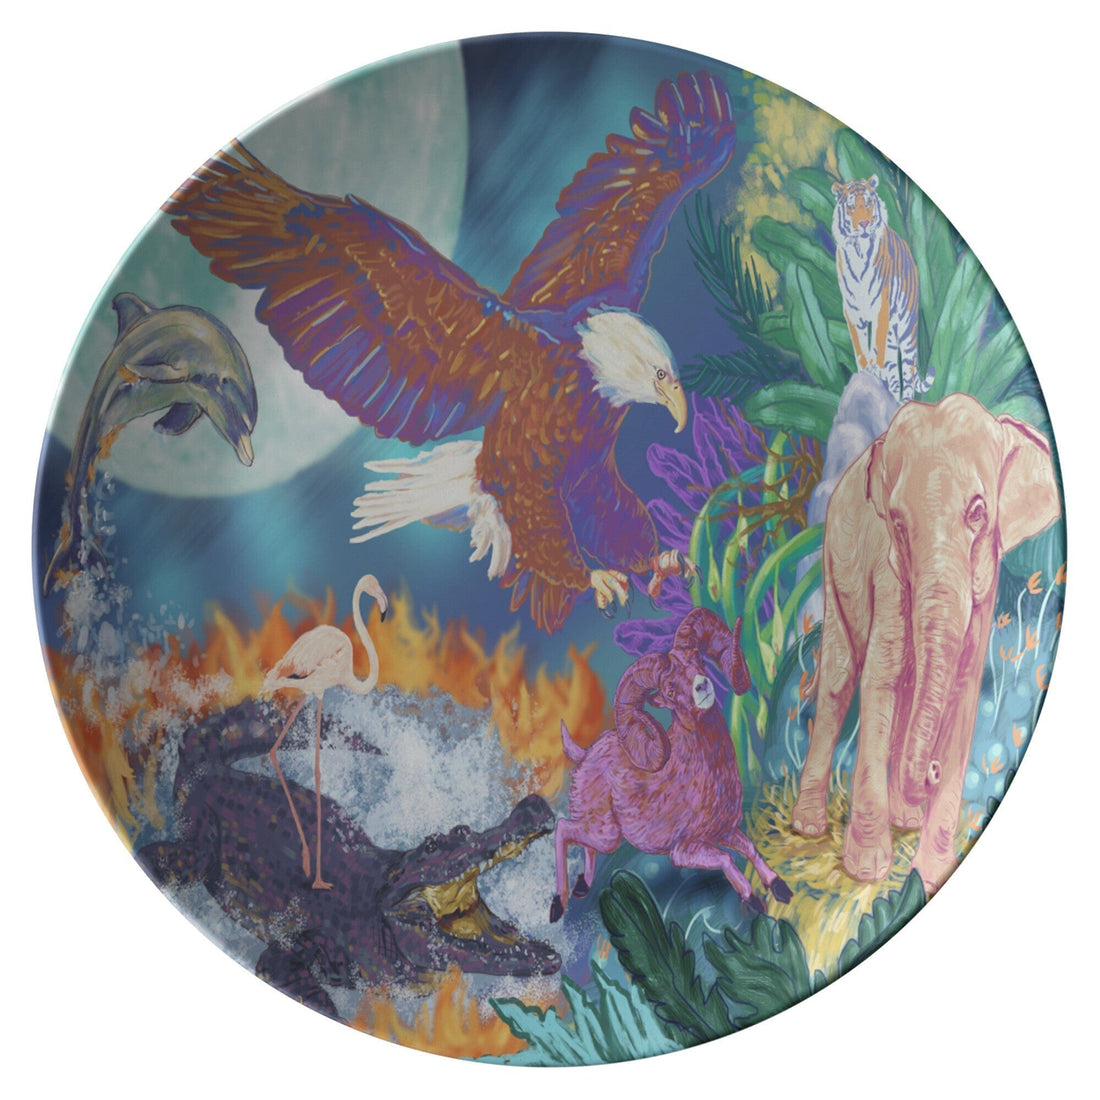 Kate McEnroe New York Dinner Plate in Wildlife Fantasy ArtPlates9820SINGLE